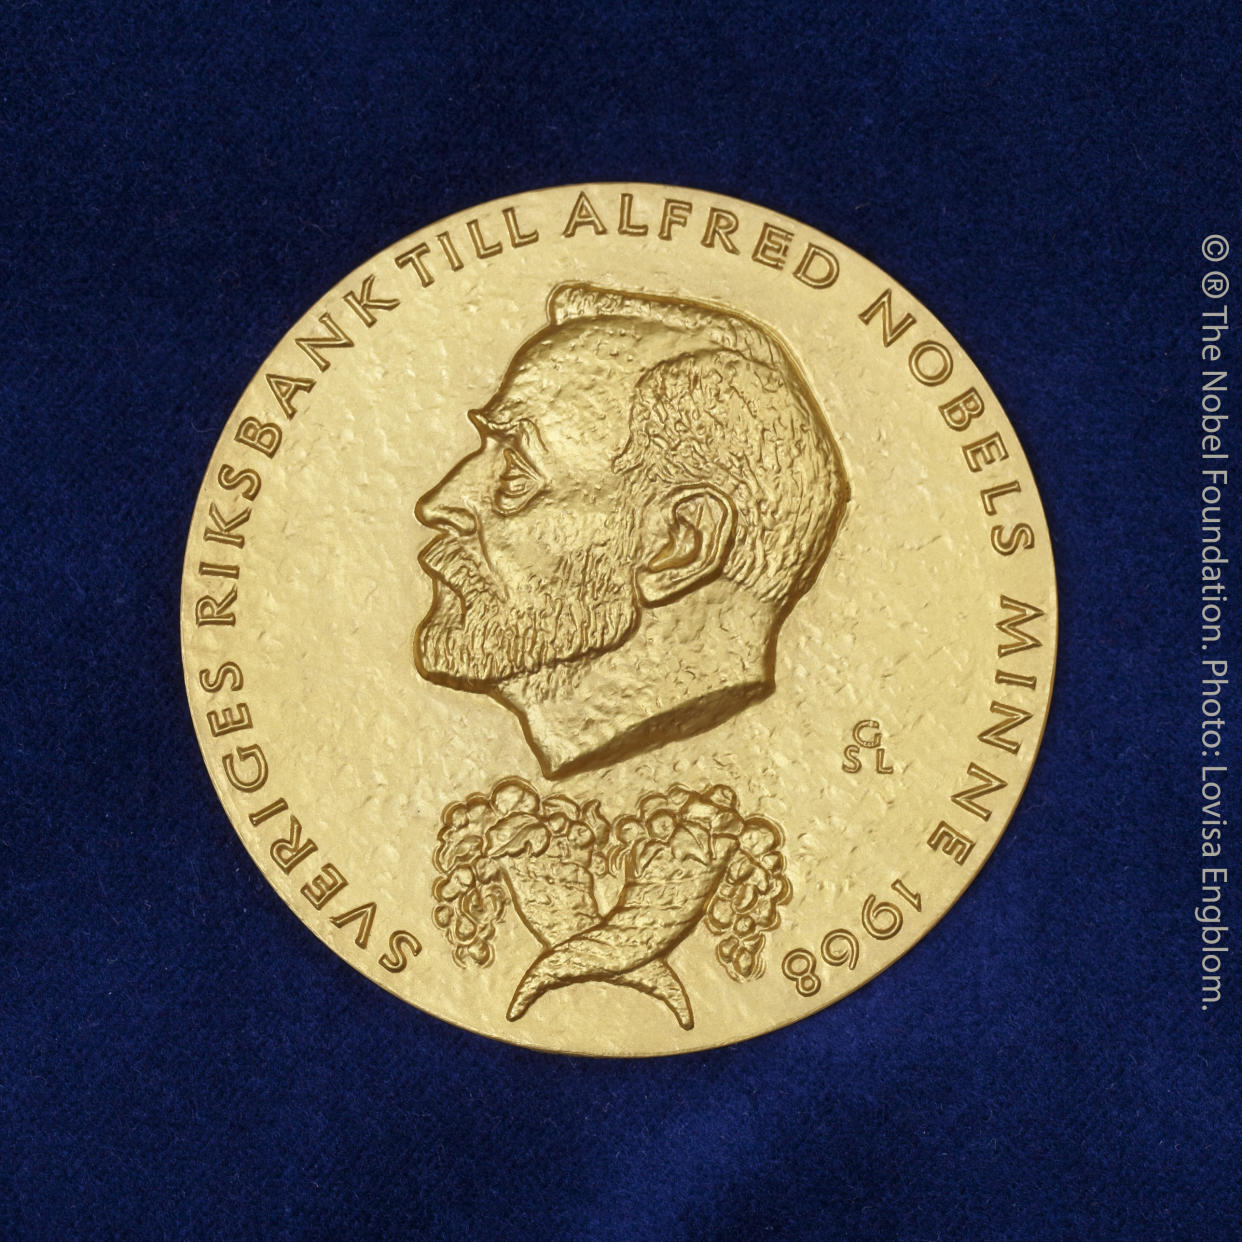 Ein Duo darf sich über die begehrte Medaille (Bild: Lovisa Engblom/The Nobel Foundation/dpa)